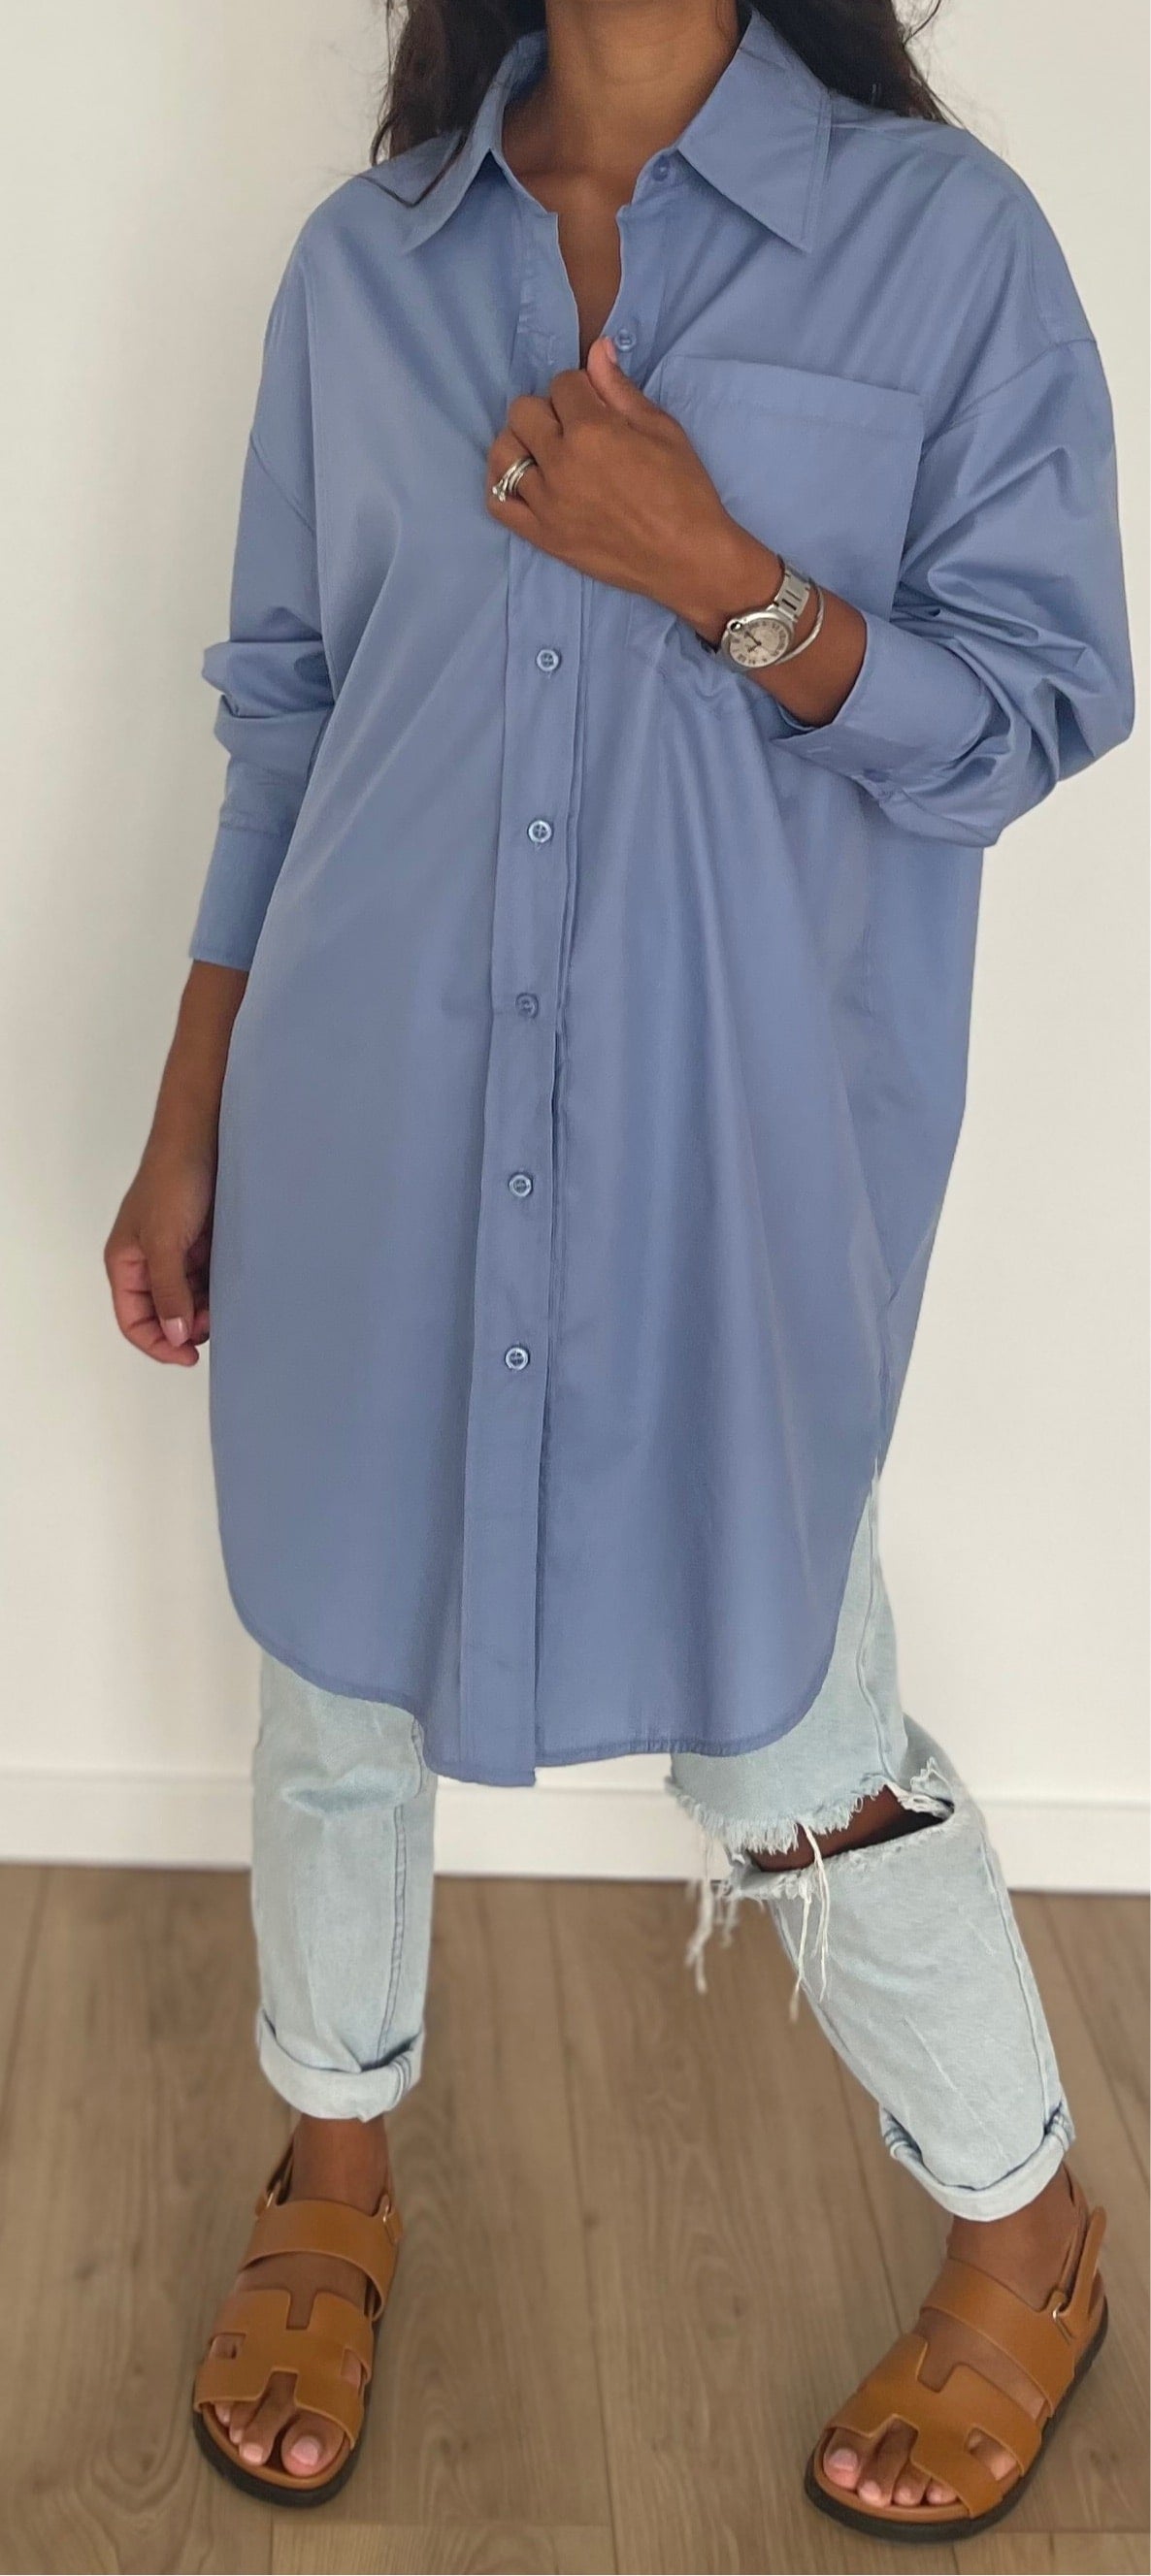 Chemise femme oversize en coton bleu clair avec boutons